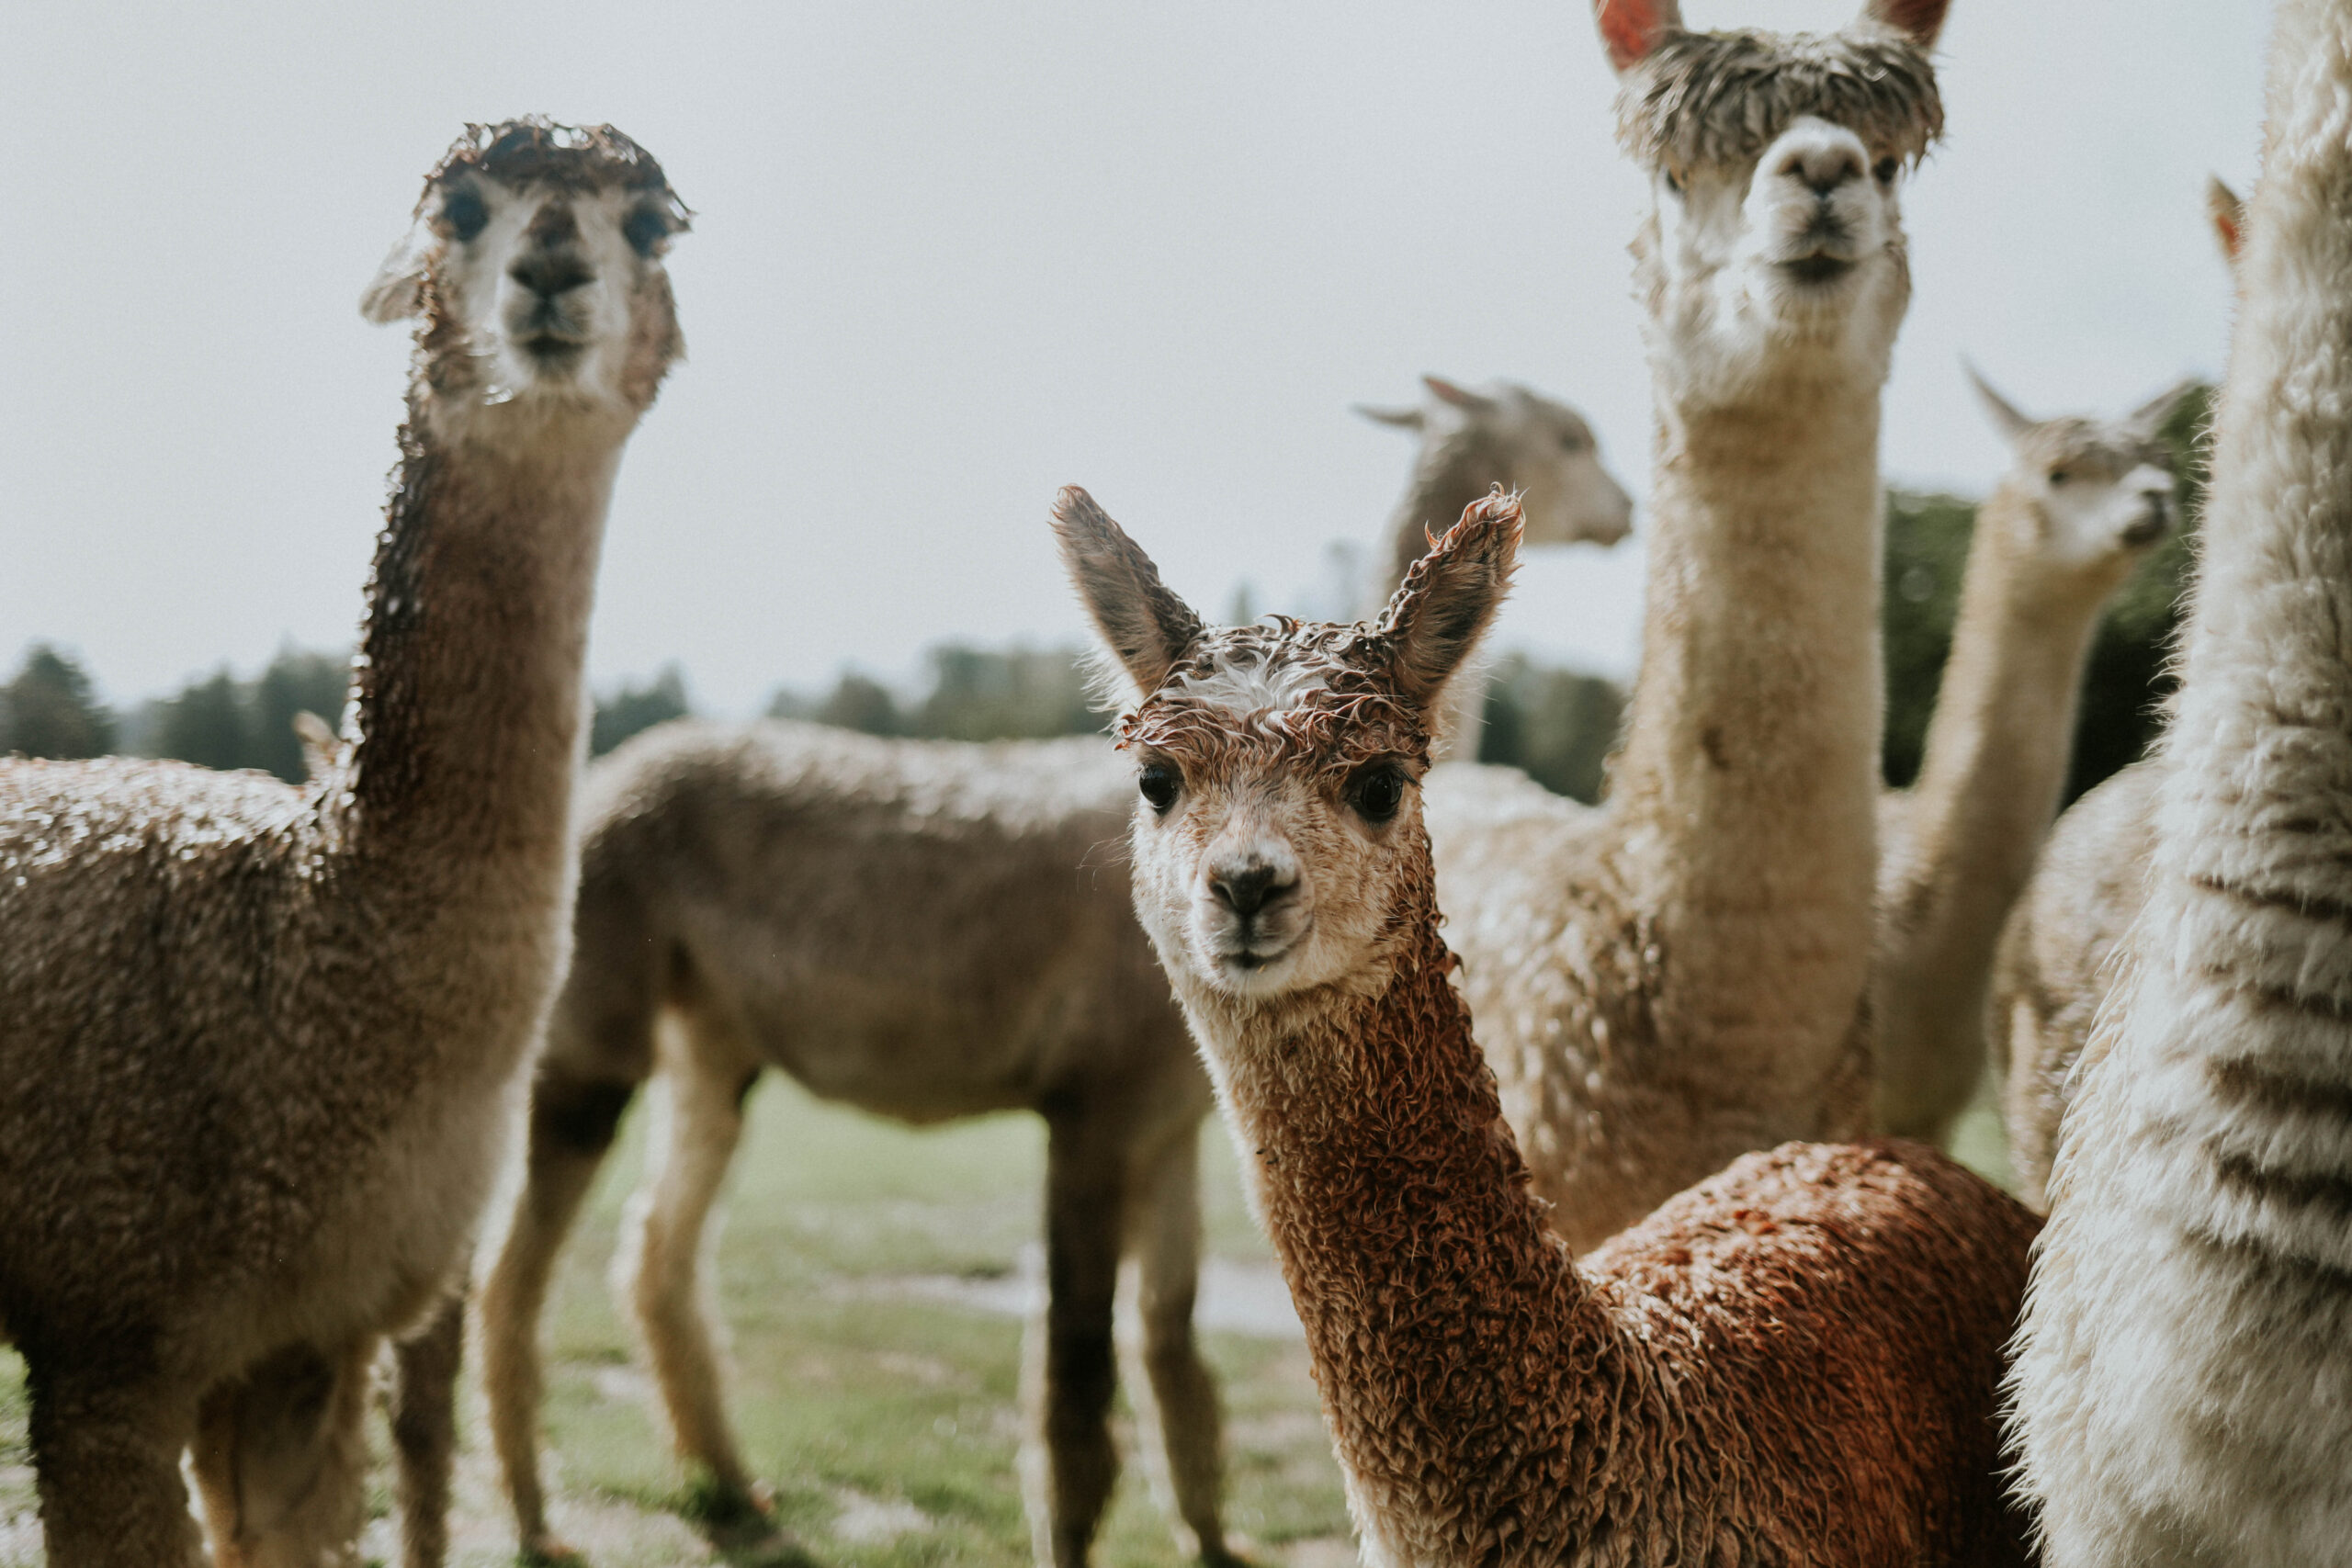 Group of furry llamas staring forward.